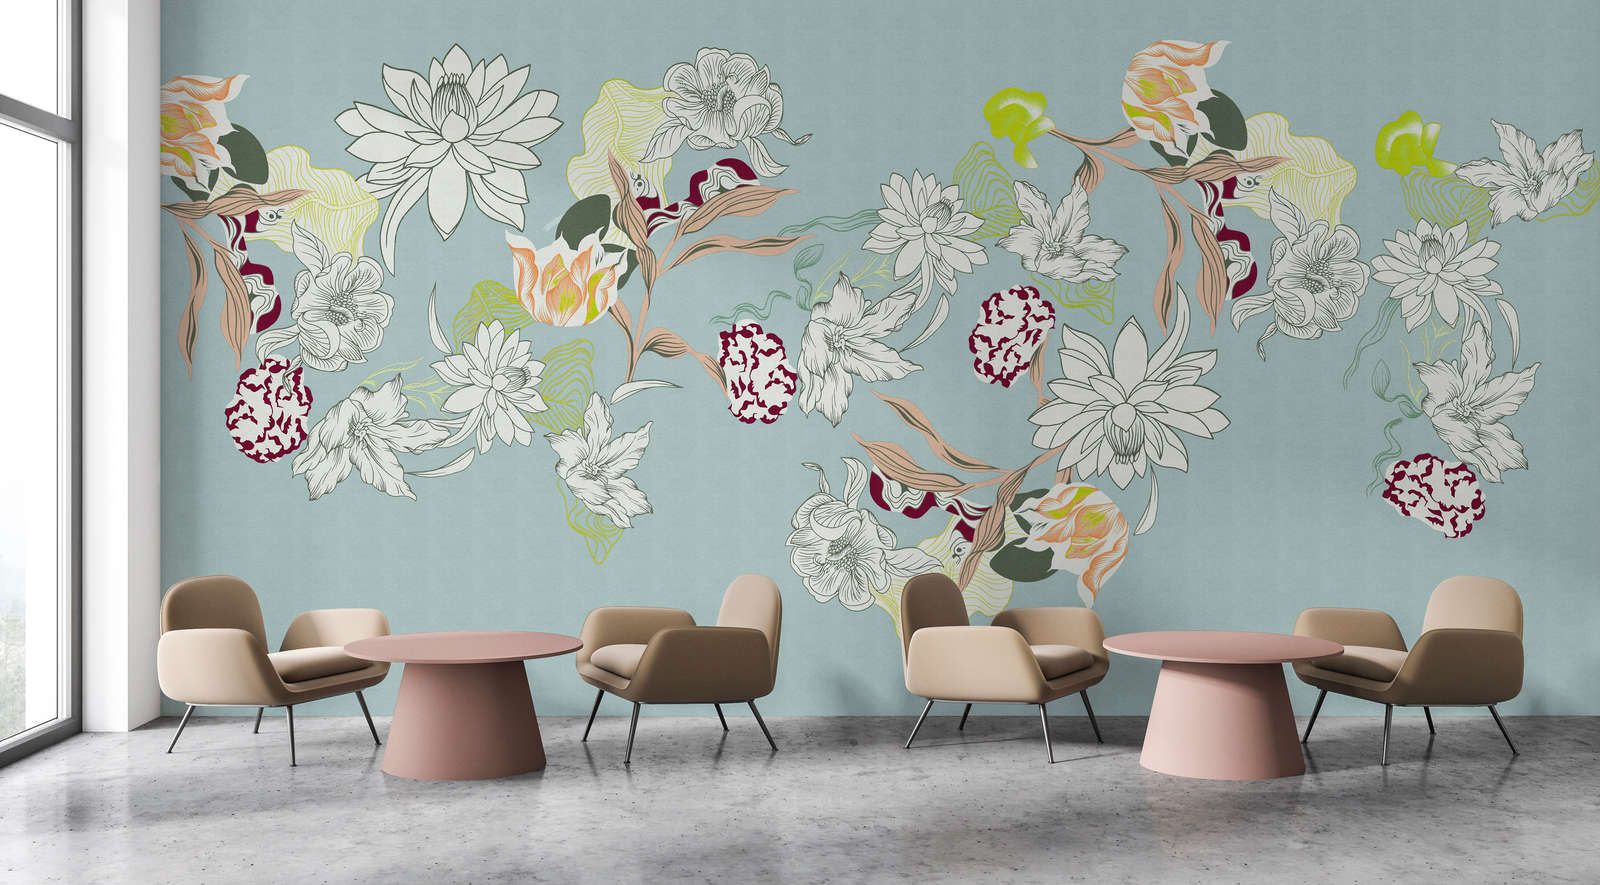             Digital behang »botany 2« - Abstracte bloemmotieven met groene accenten tegen een subtiele linnen textuur - Matte, gladde vliesstof
        